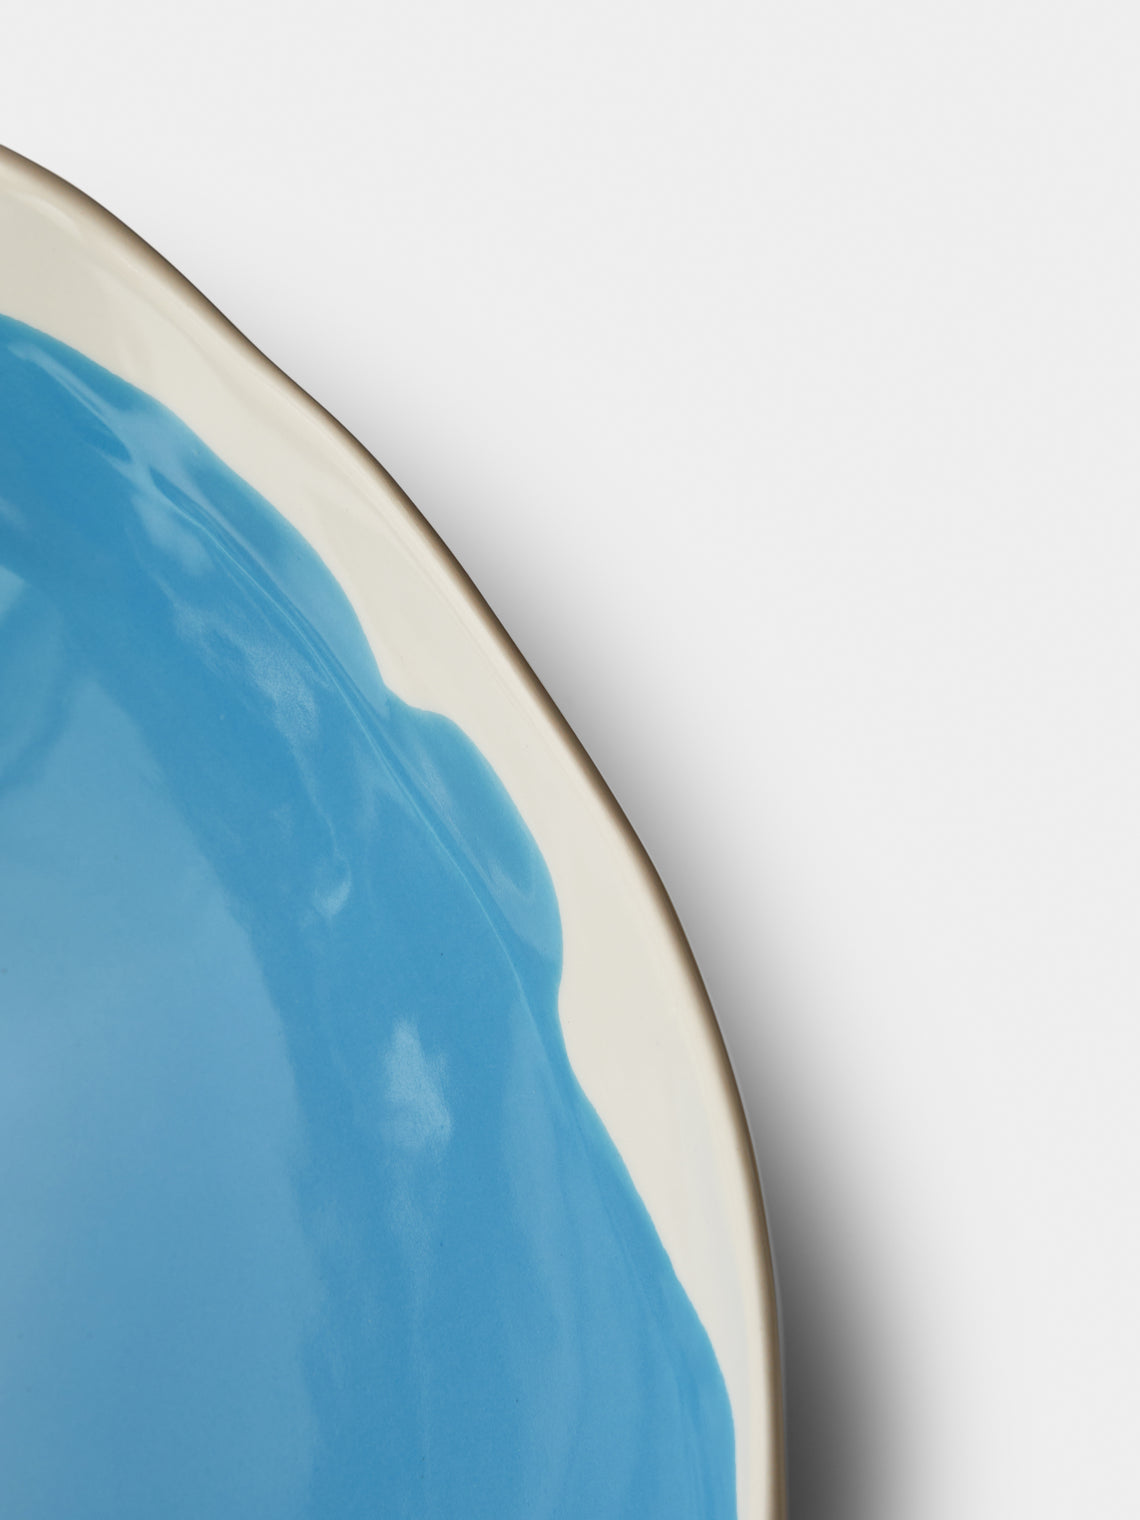 Pottery & Poetry - Hand-Glazed Porcelain Salad Bowl - Light Blue - ABASK